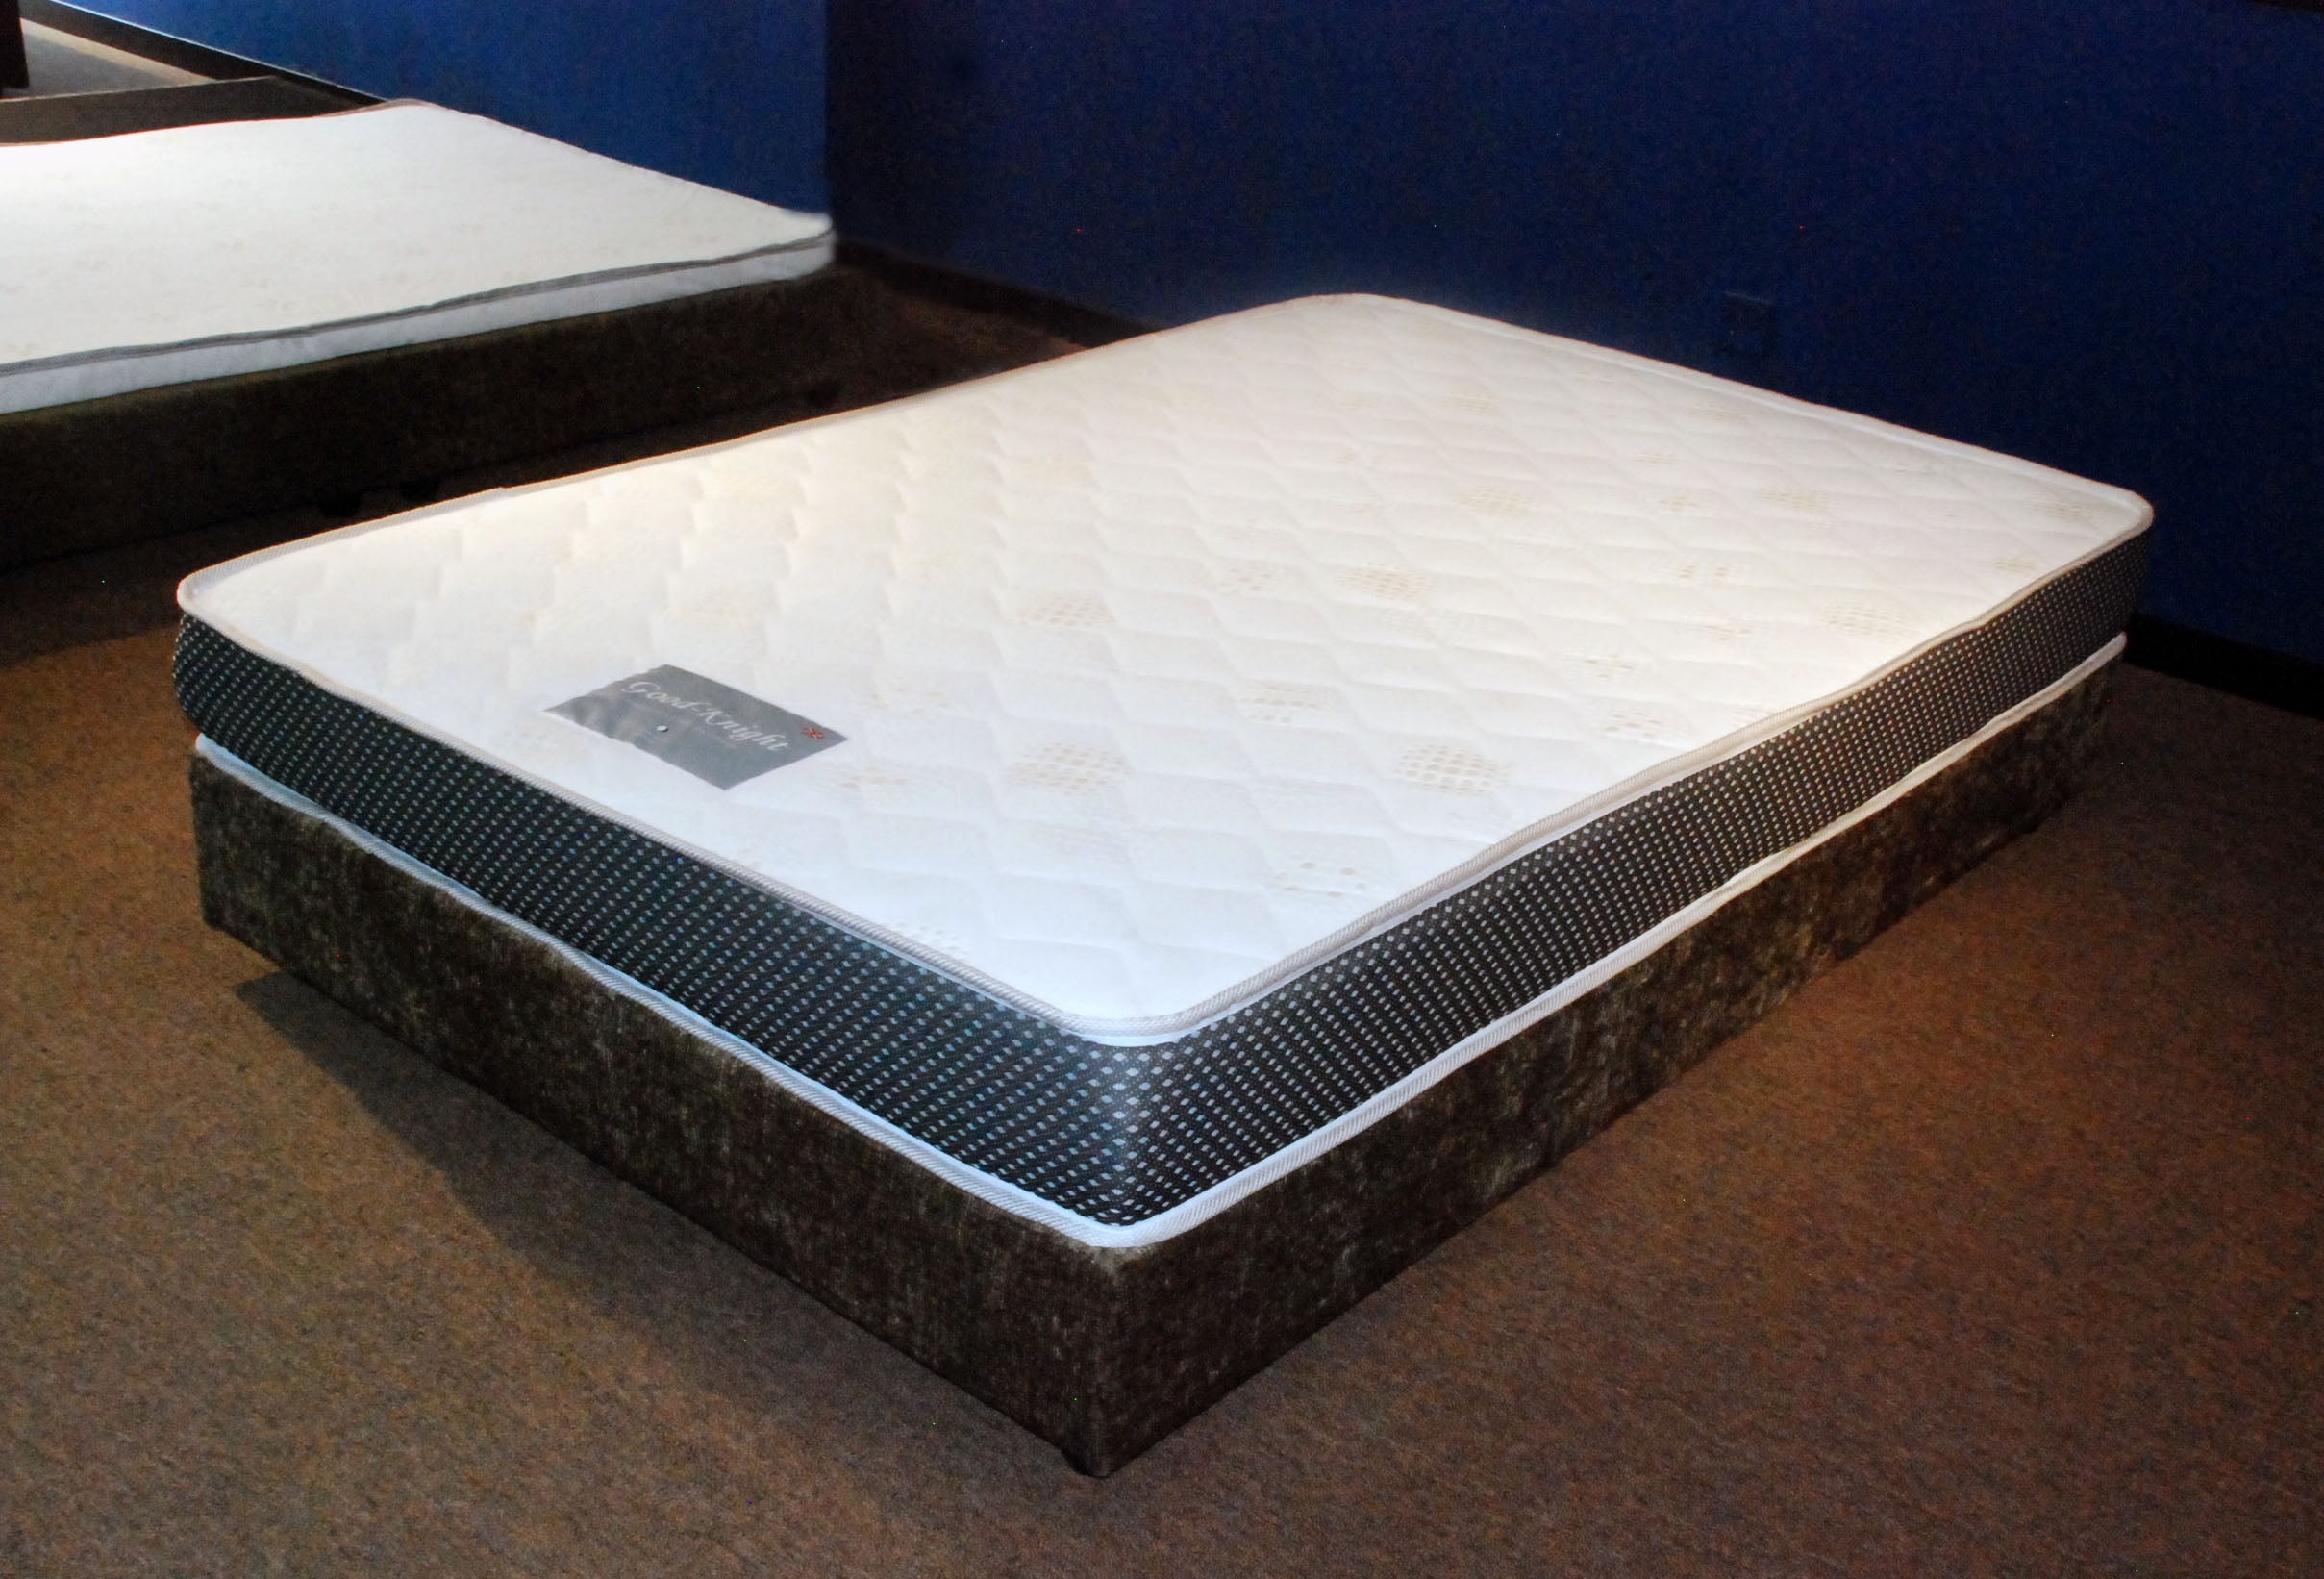 knight's mattress & furniture lehi ut